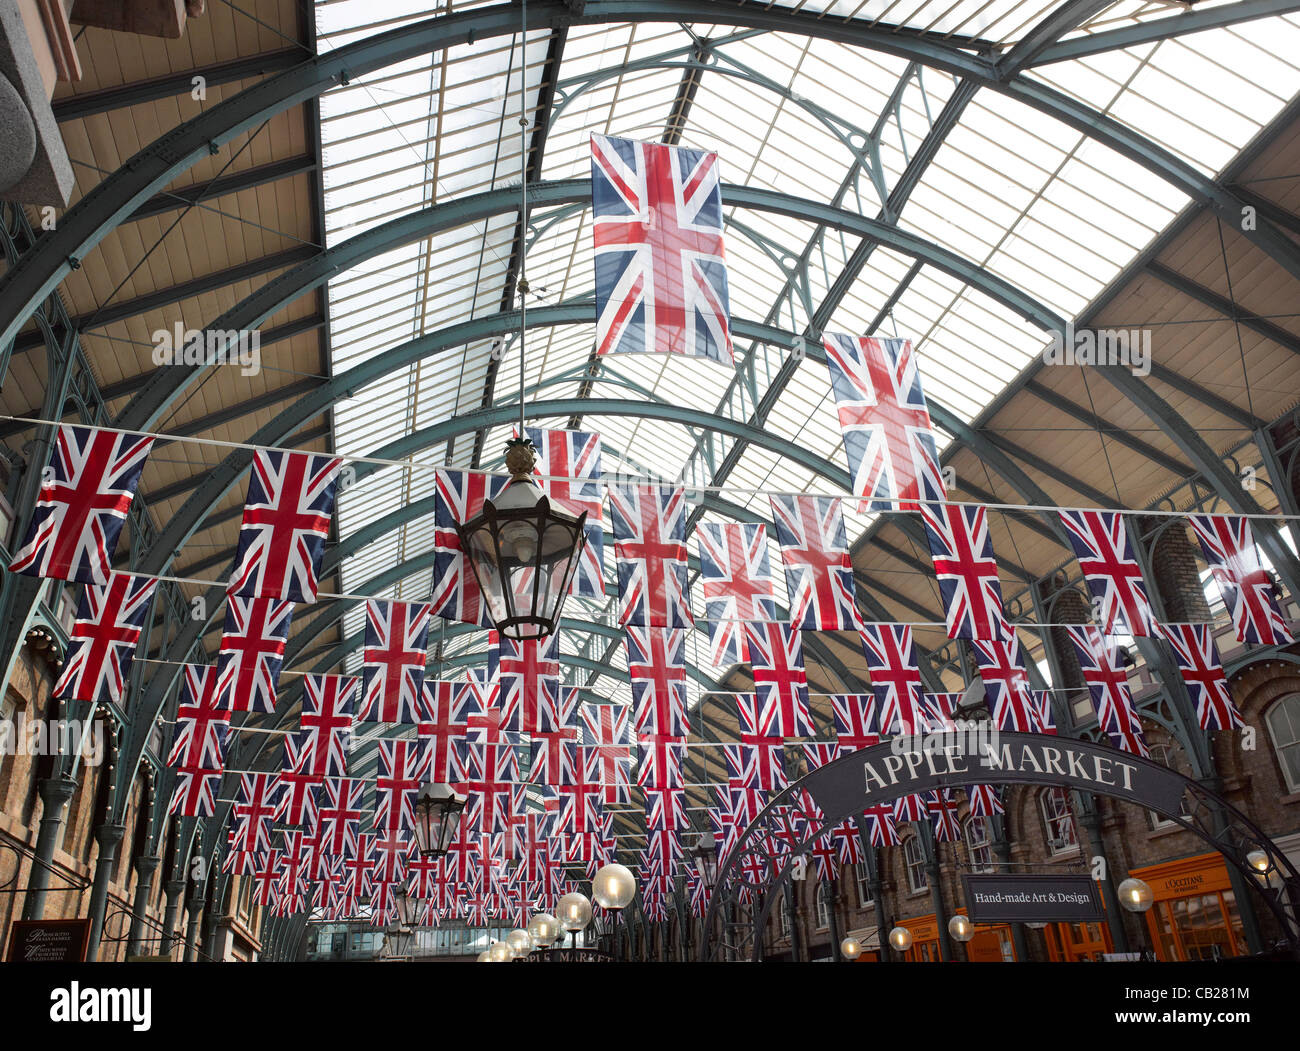 Union Jack-Flaggen in der Apple Markt, Covent Garden, London, UK. Diese Fahnen wurden früh, 23. Mai 2012 gesetzt. Stockfoto